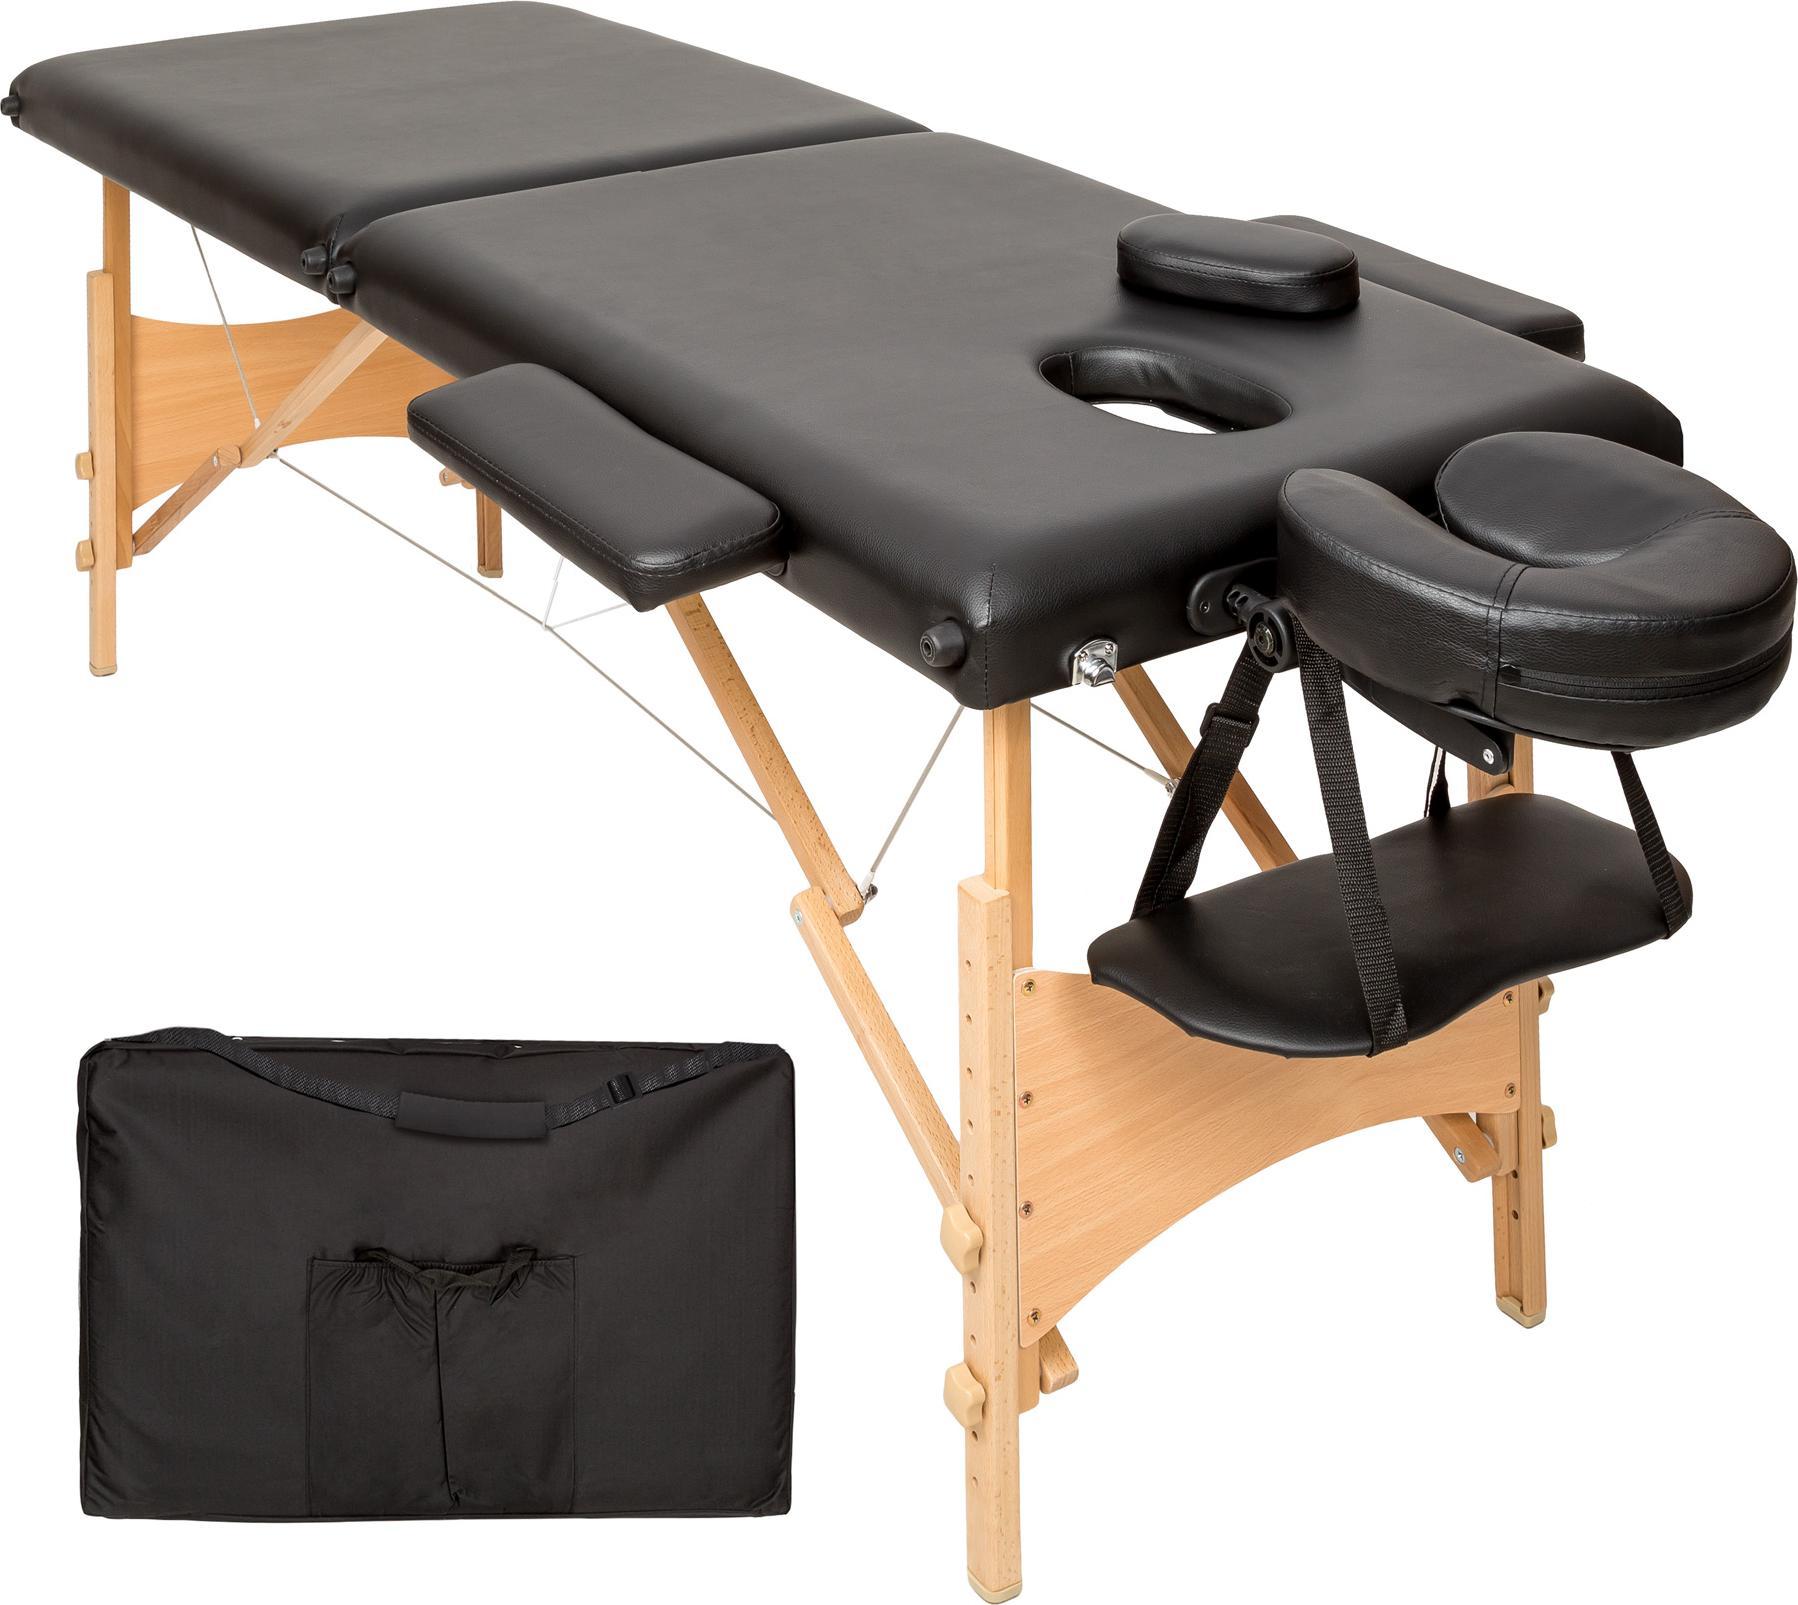 Zdjęcia - Stół do masażu Tectake 2-strefowy  Freddi z wyściółką 5cm i drewnianą ramą 